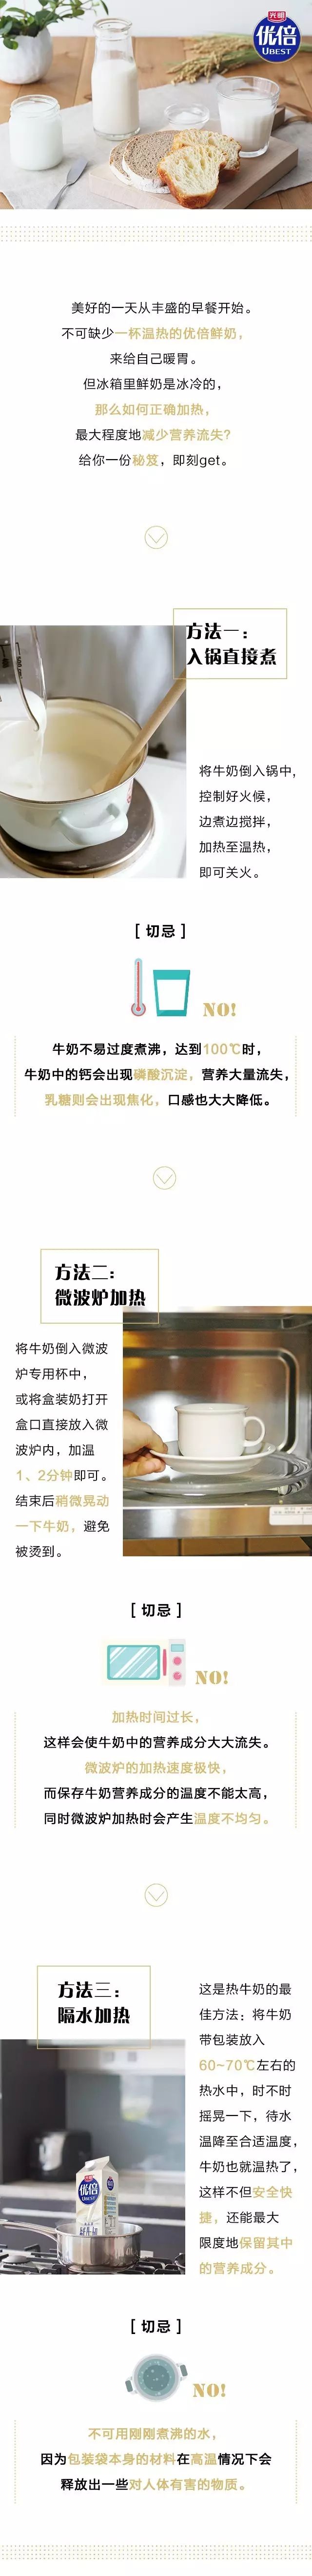 【6月23日】新鲜教育丨加热盒装牛奶的秘笈.jpg